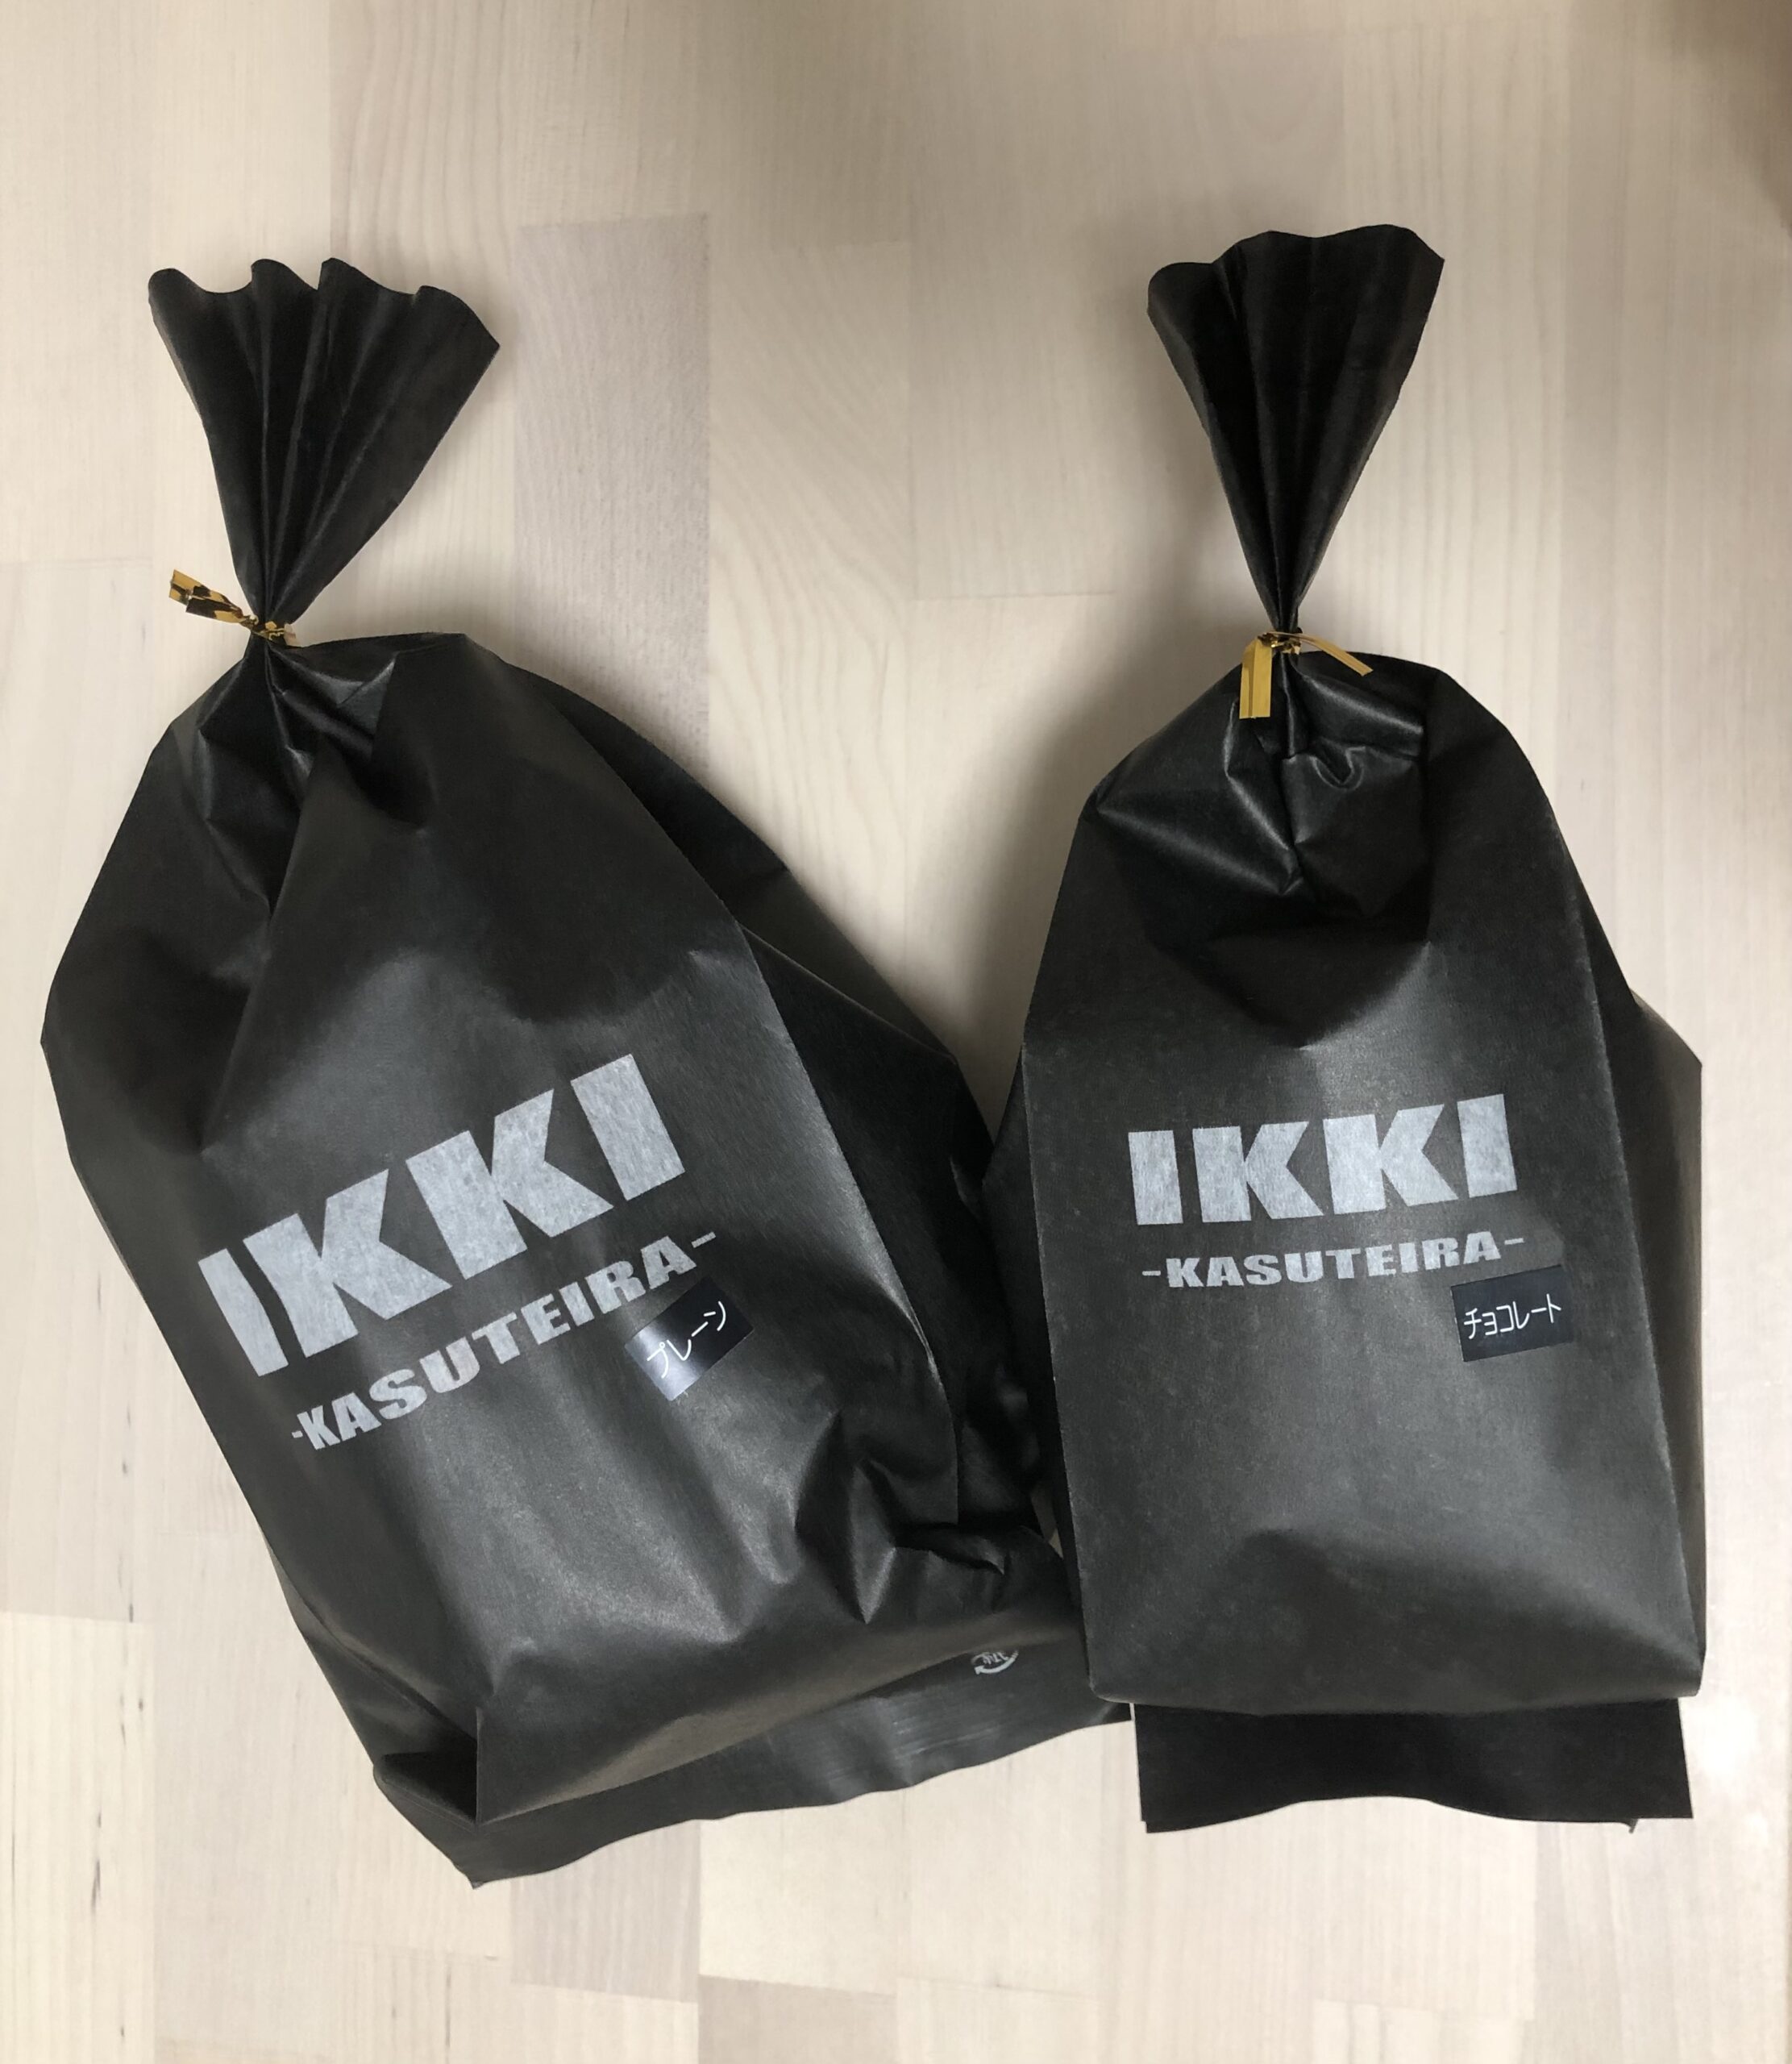 IKKI-KASUTEIRA-心斎橋店